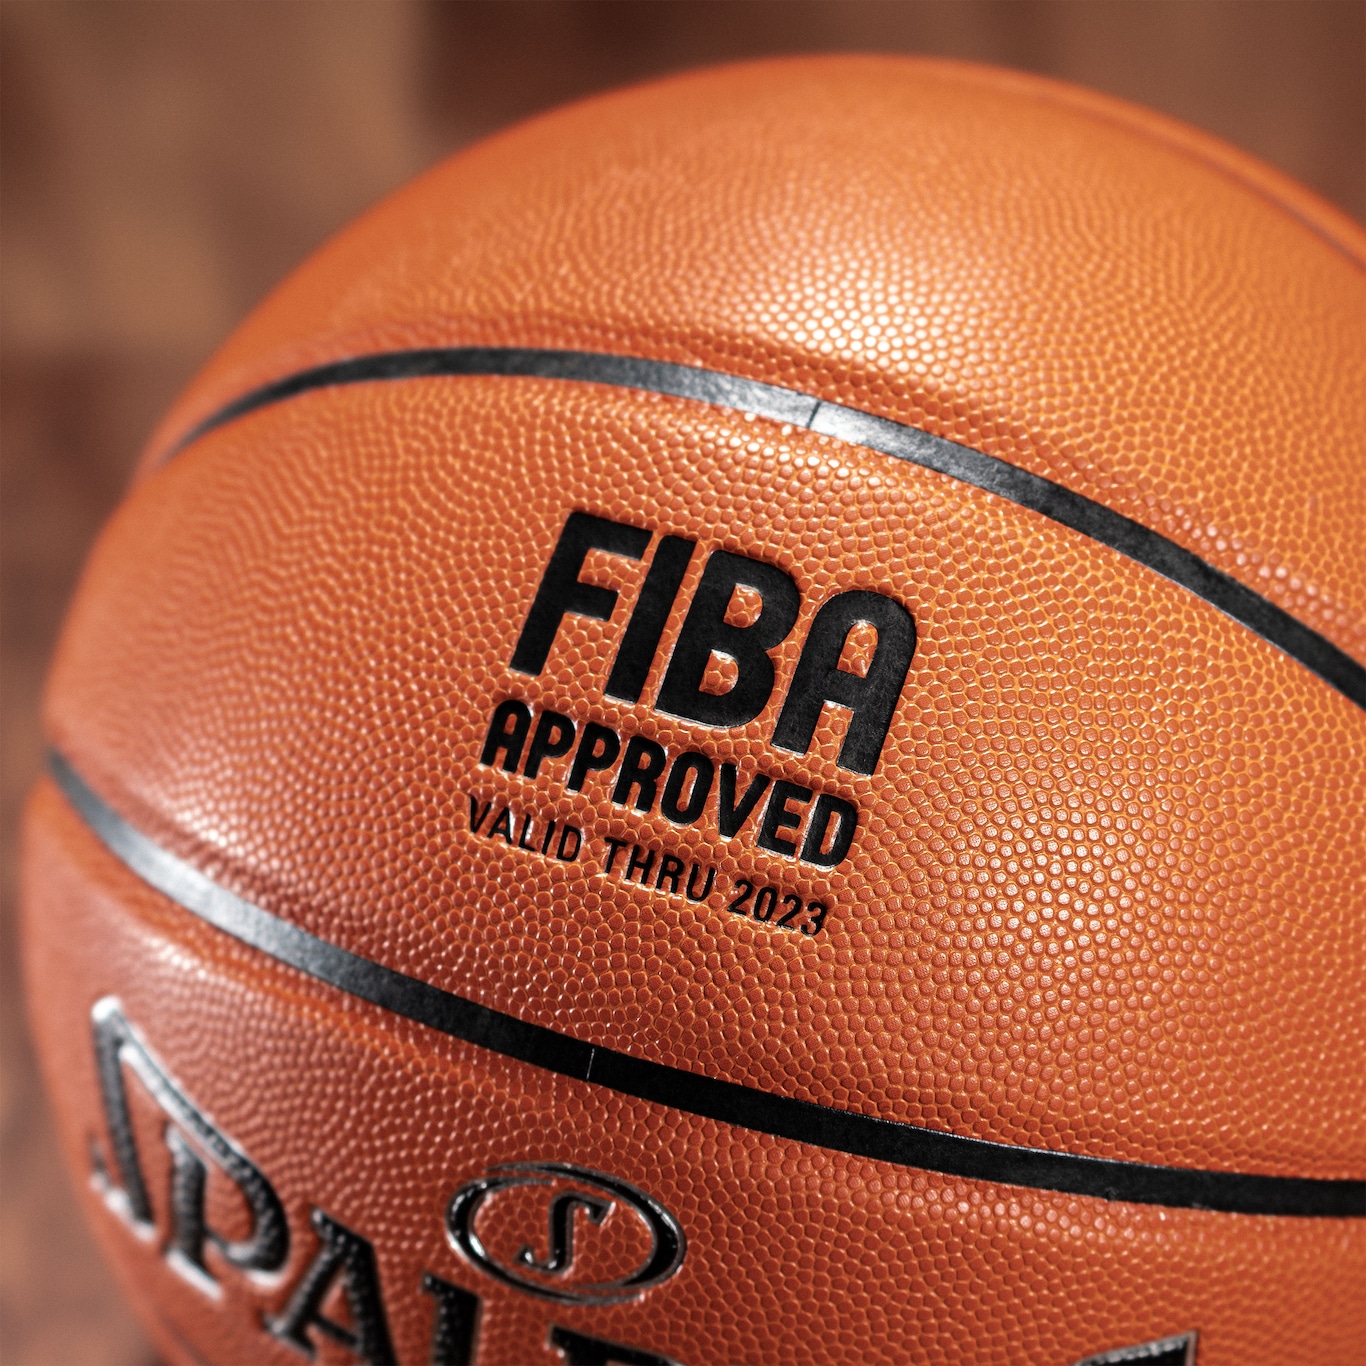 Bola De Basquete Spalding Tf-1000 Precision FIBA - spalding